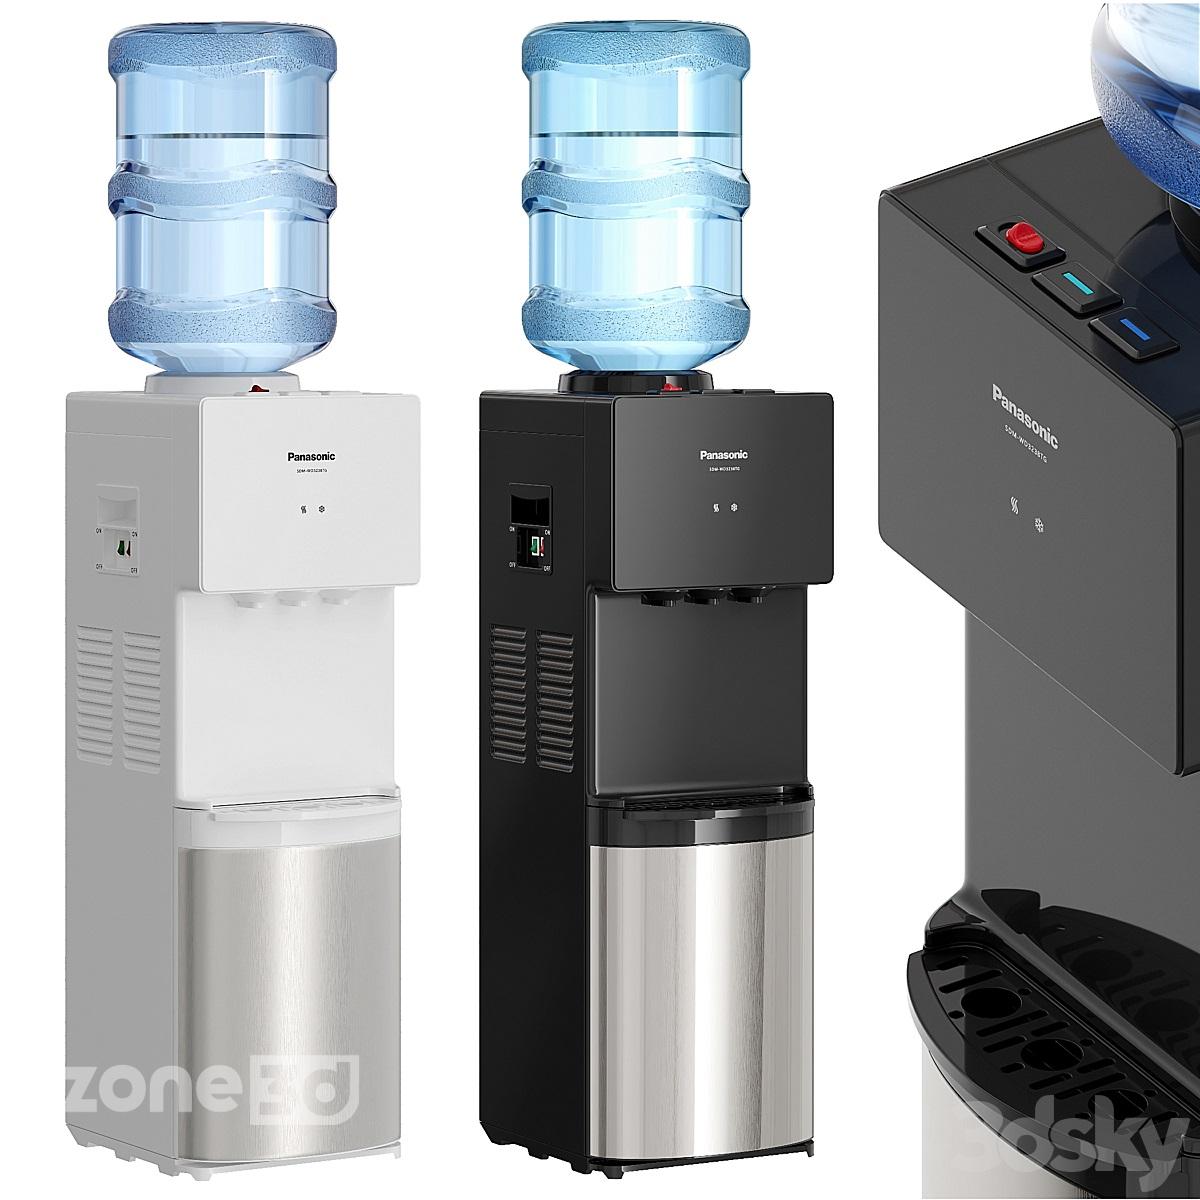 آبجکت دستگاه آب سردکن پلاستیکی و فلزی سفید و مشکی برند Panasonic